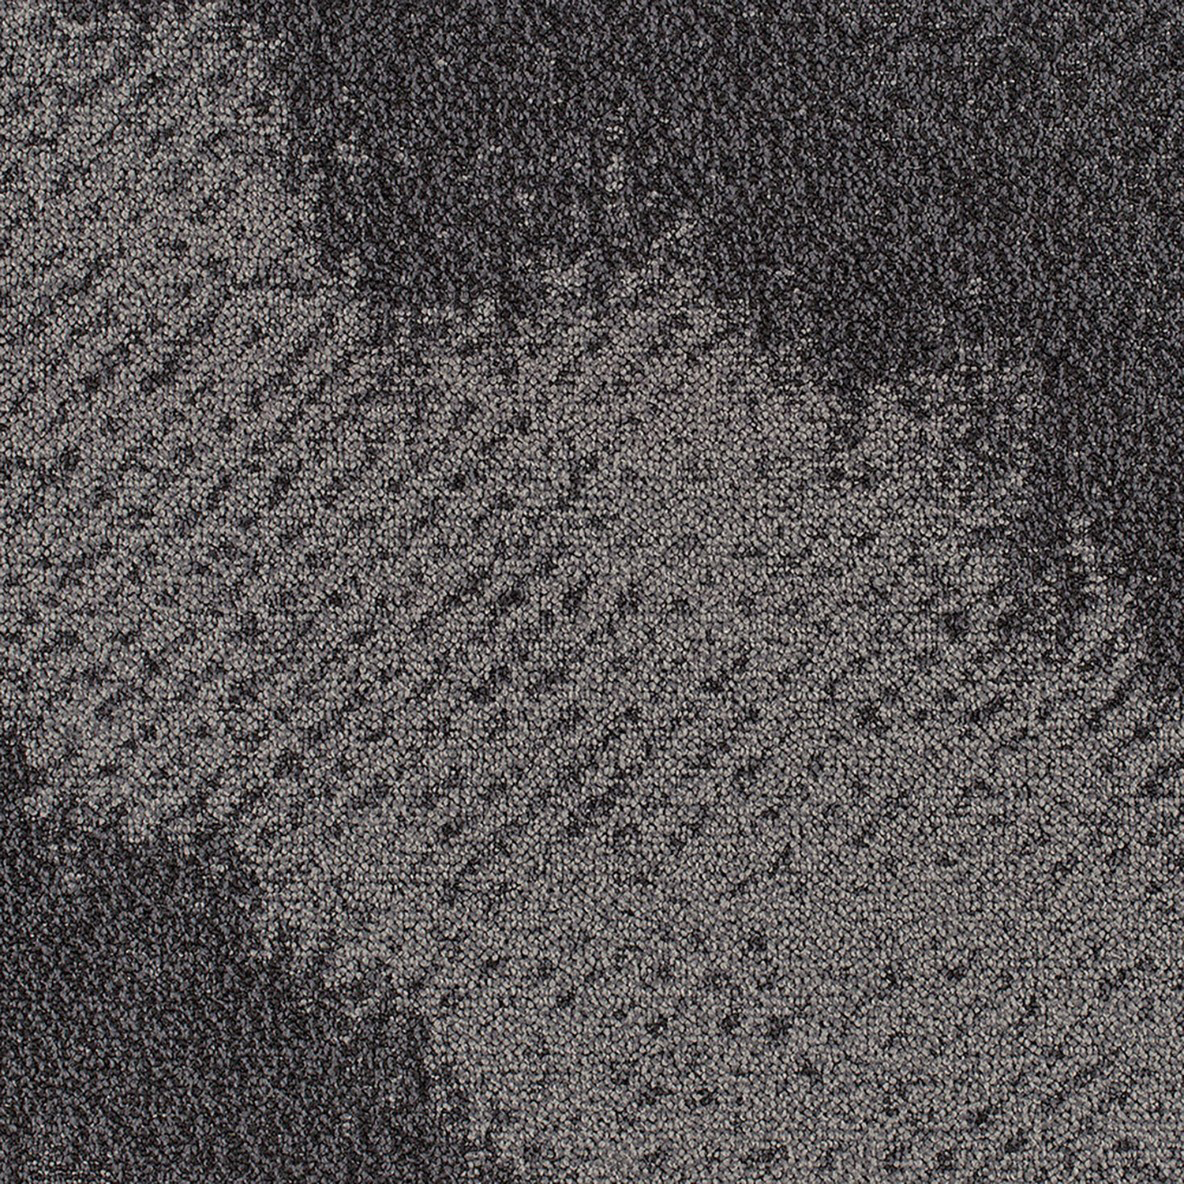 Burnished Commercial Carpet Tile .325 Inch x 50x50 cm Per Tile Iron color close up